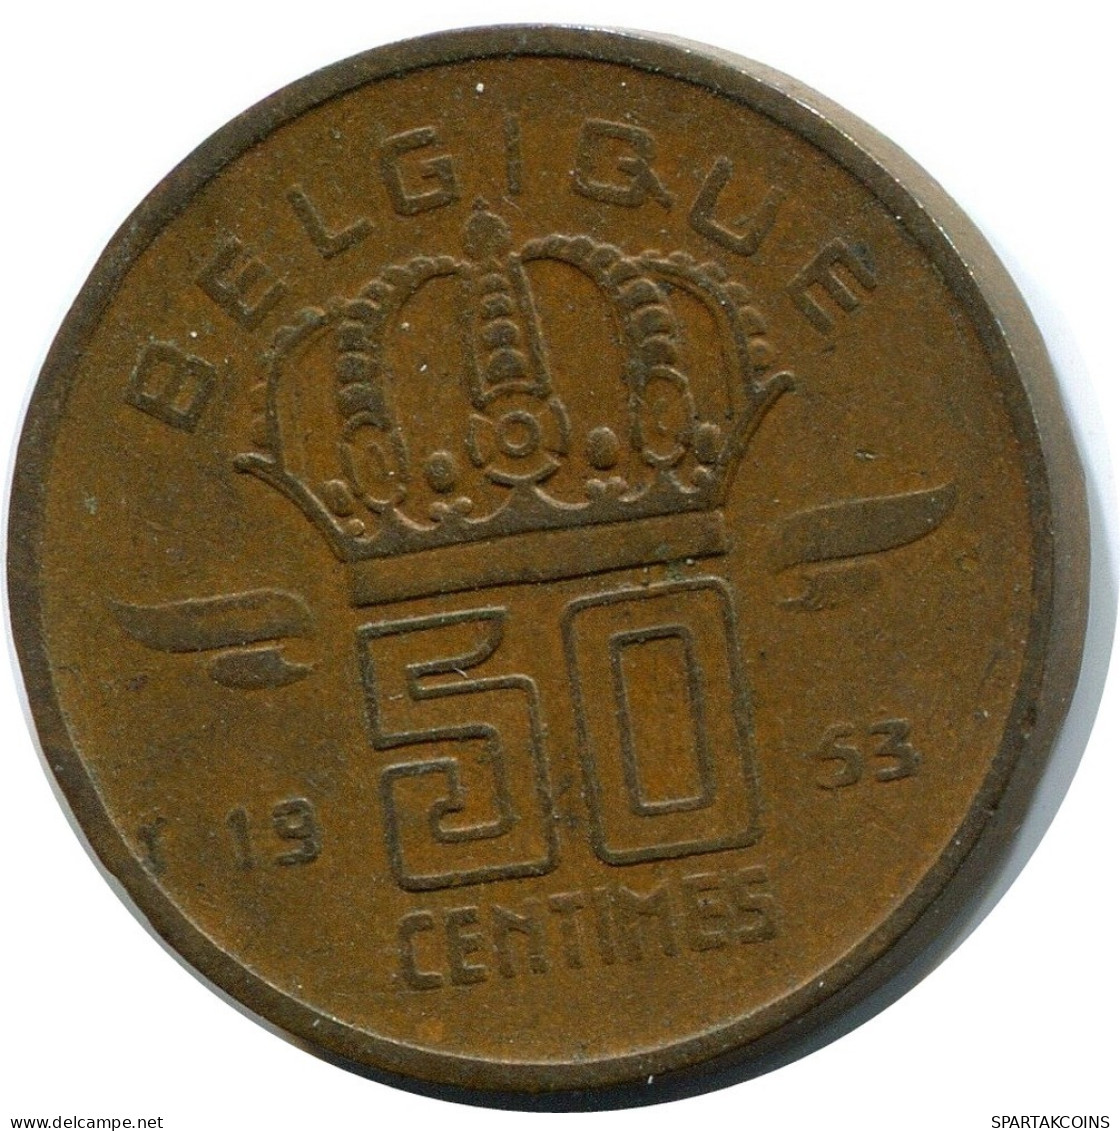 50 CENTIMES 1953 DUTCH Text BELGIUM Coin #BA395.U.A - 50 Cents